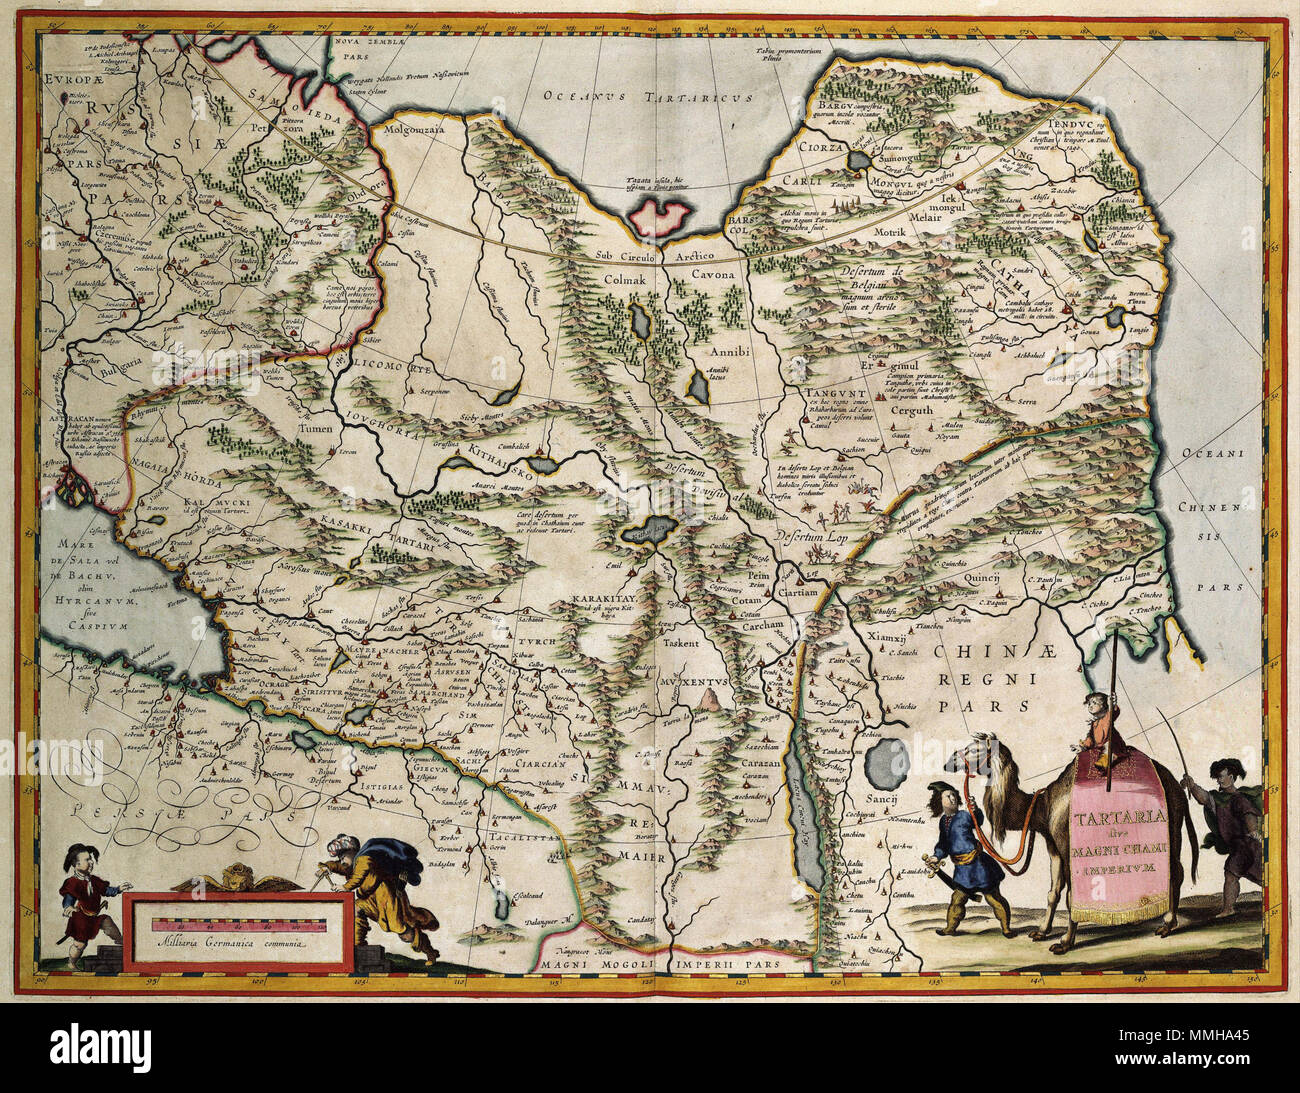 . Nederlands: Deze kaart van Centraal-Azië werd nel 1630 porta gepubliceerd Willem Jansz. Blaeu (1571-1638). Enorme dit gebied werd oorspronkelijk beheerst porta ruitervolken verschillende, de Tataren. Deze volken gingen, nadat ze di 1202 porta Djengis-Chan waren verslagen op in het Mongoolse rijk. De naam Tatarije bleef echter su bestaan en werd vaak gebruikt als synoniem voor de Mongolen. Inglese: Questa mappa di Asia centrale è stato pubblicato nel 1630 da Willem Jansz. Blaeu (1571-1638). L enorme area era originariamente abitato da diverse persone che montarono a cavallo, Tartari. Dopo che essi sono stati sconfitta Foto Stock